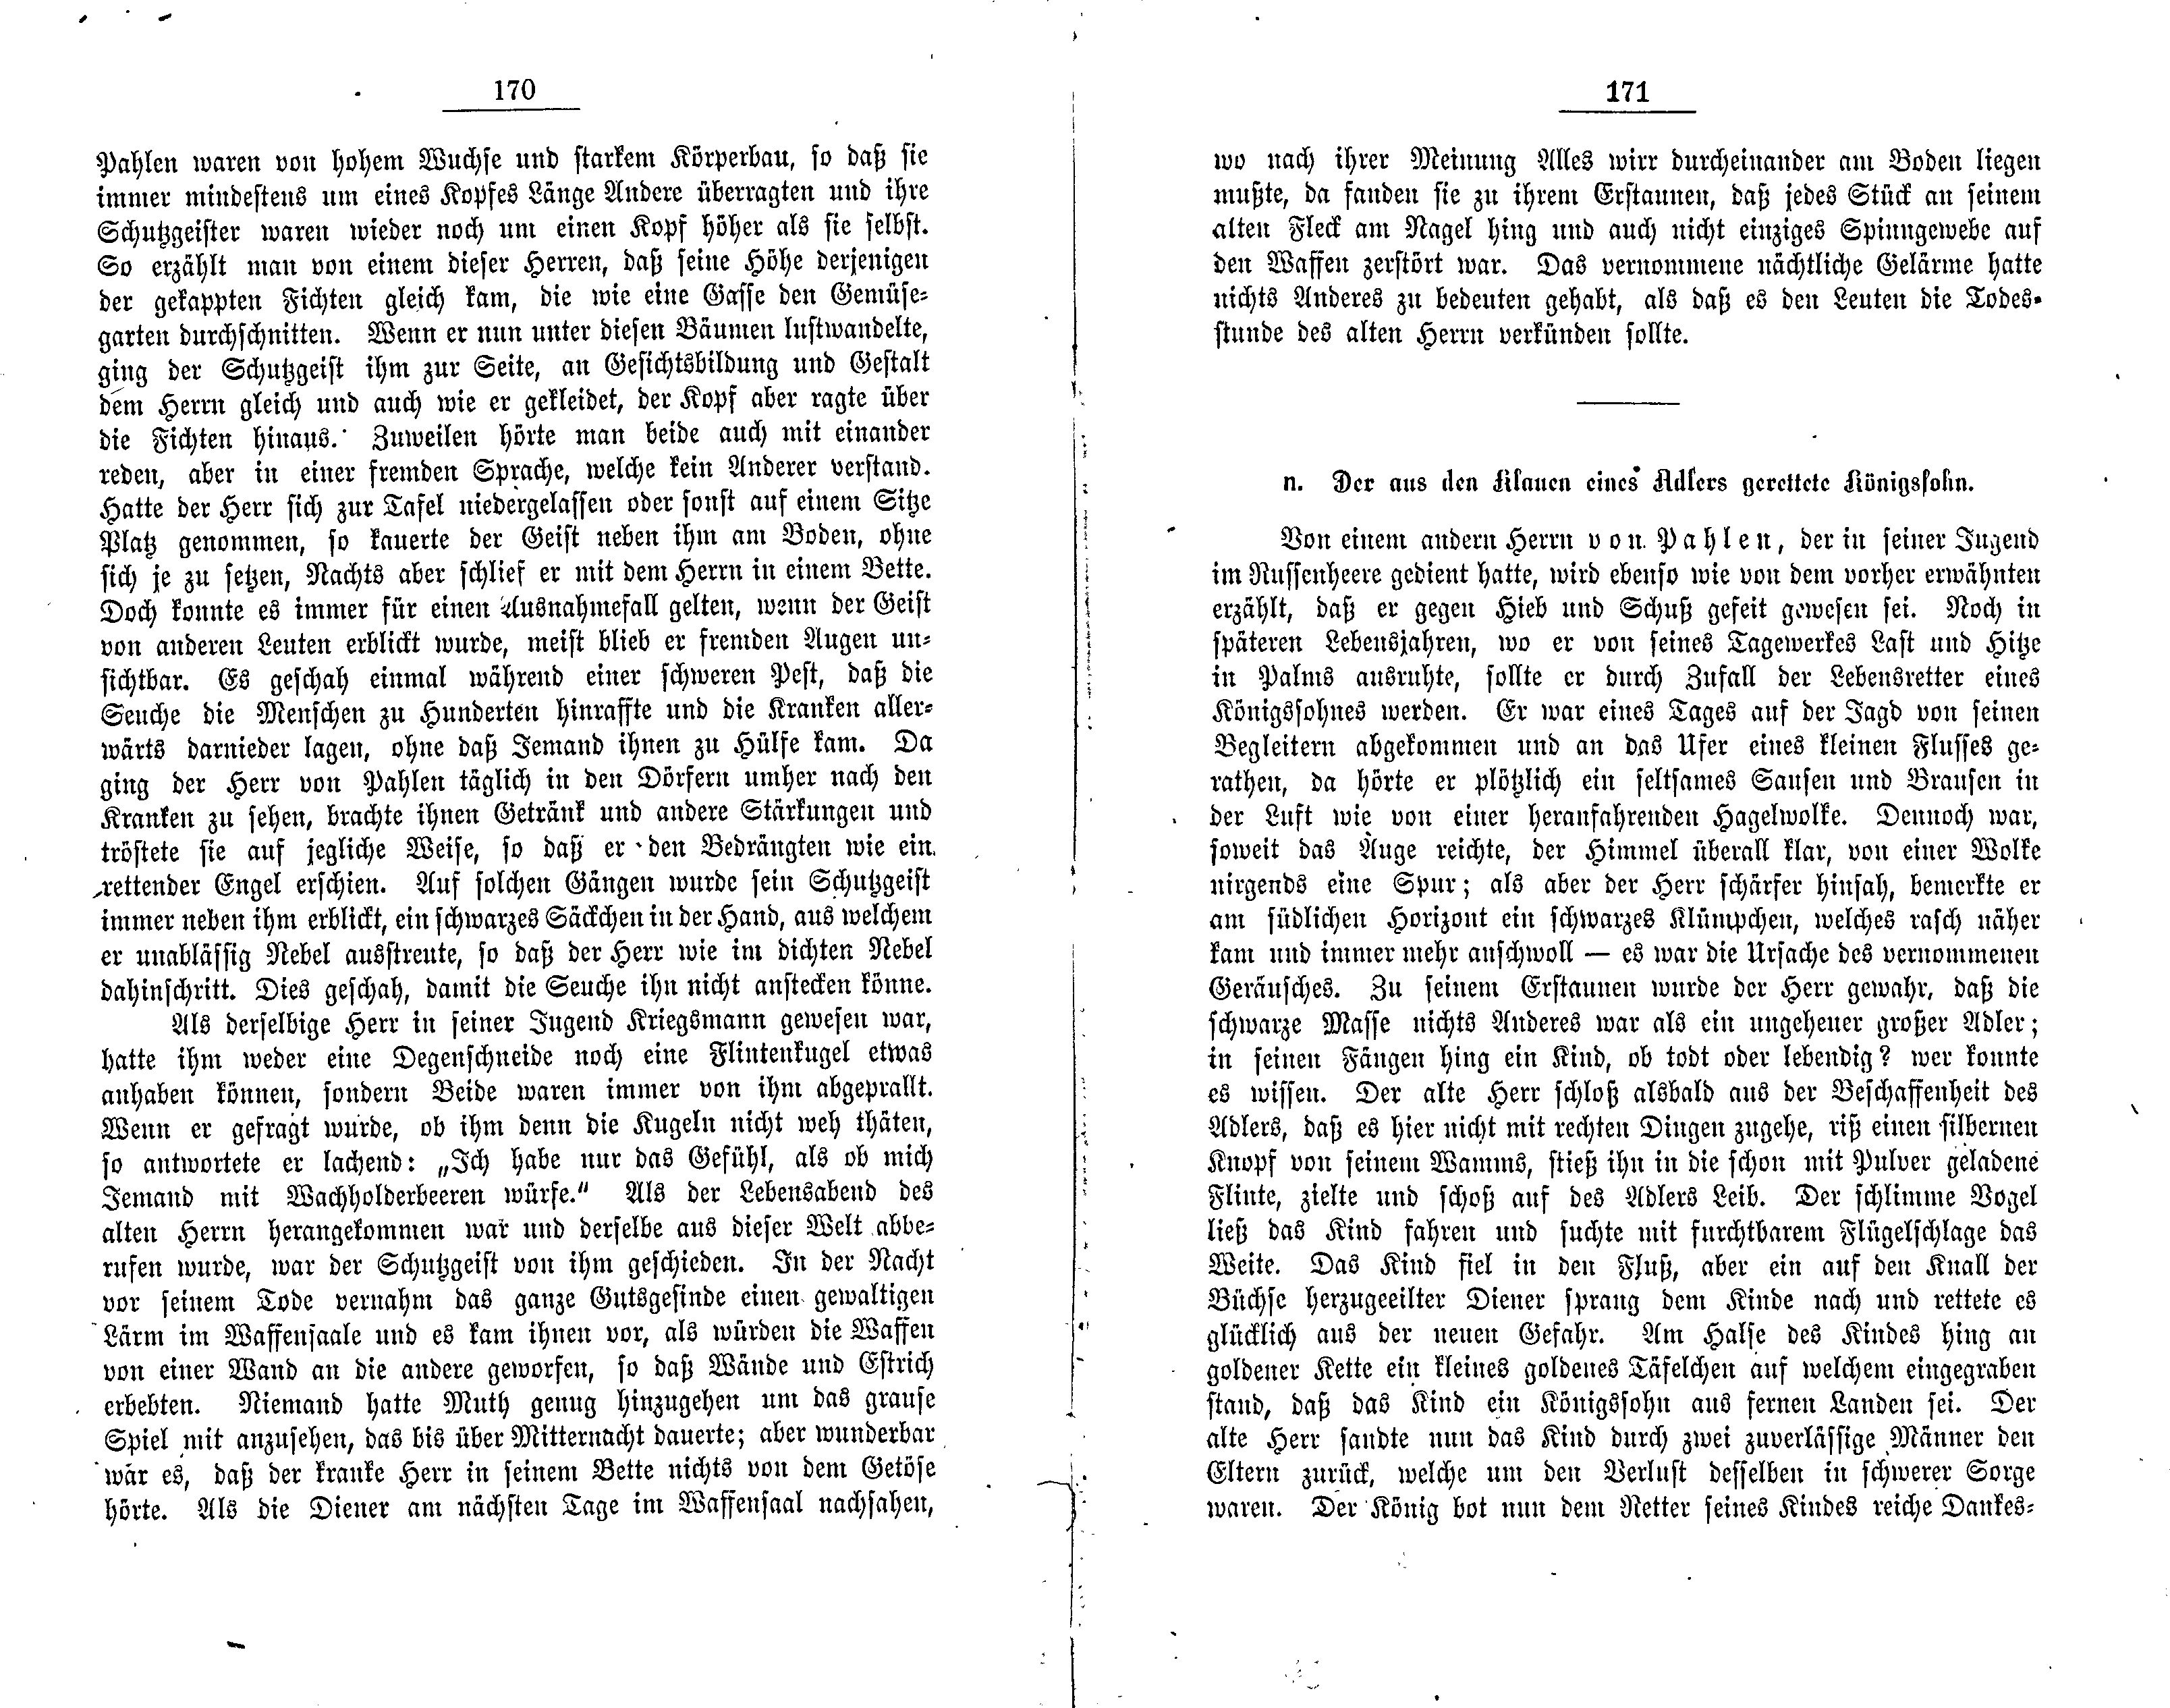 Der aus den klauen eines Adlers gerettete Königssohn (1881) | 1. (170-171) Основной текст